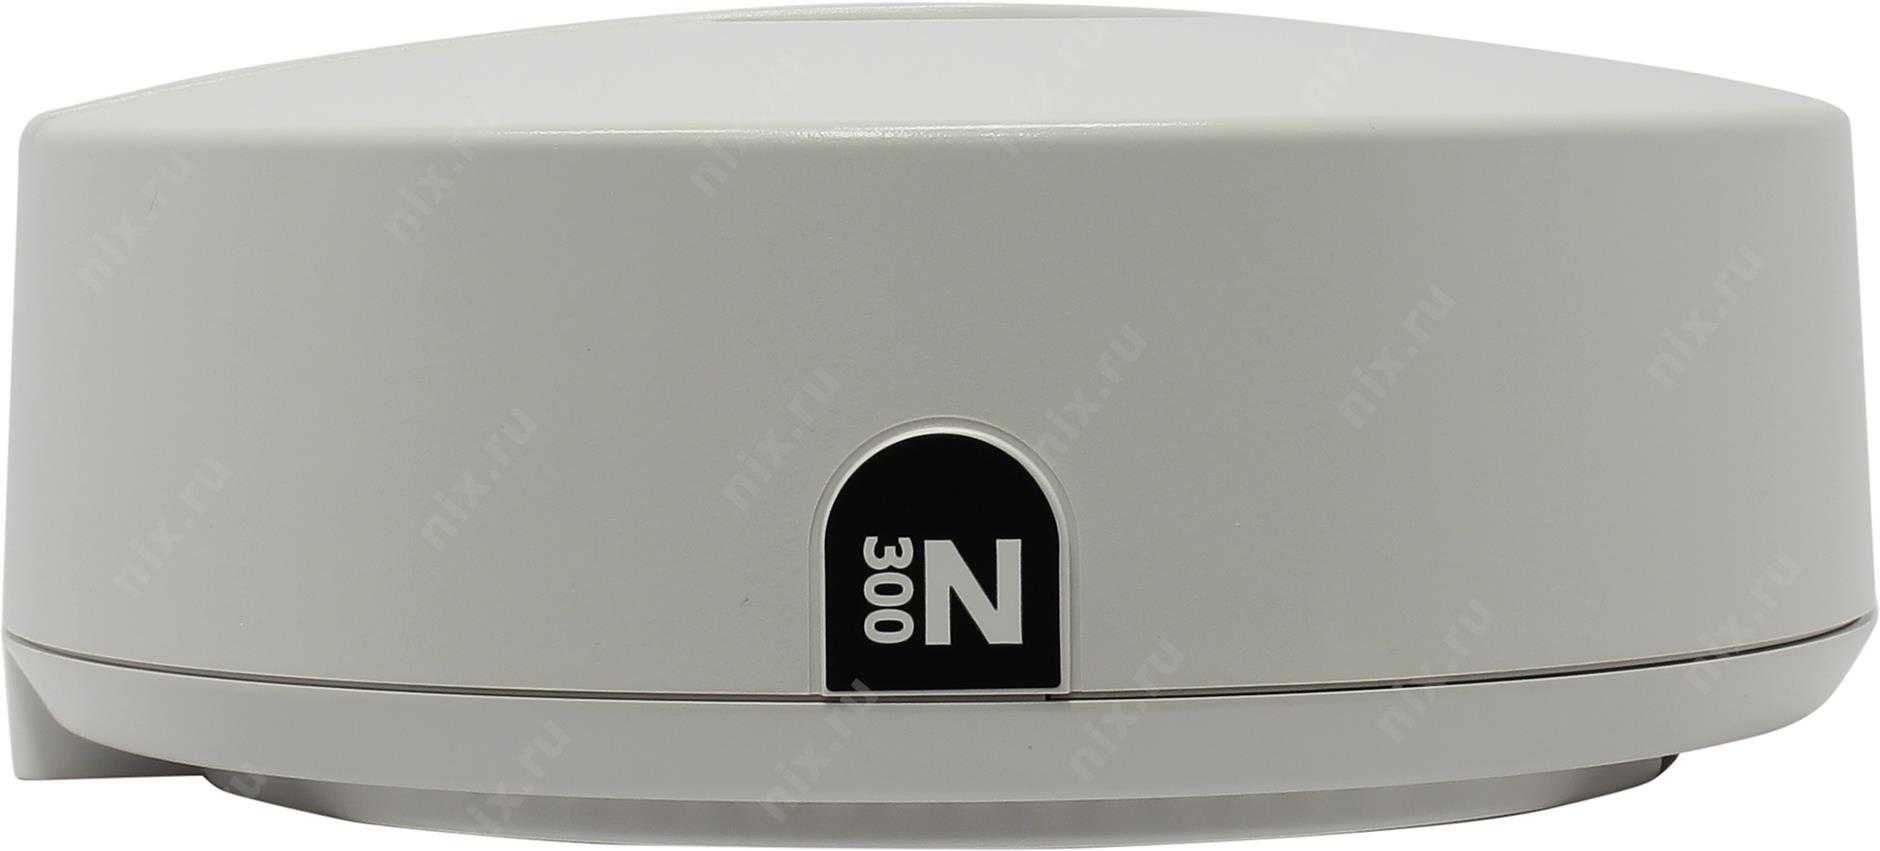 Wi-Fi роутера ZyXEL NWA5121-NI - подробные характеристики обзоры видео фото Цены в интернет-магазинах где можно купить wi-fi роутеру ZyXEL NWA5121-NI